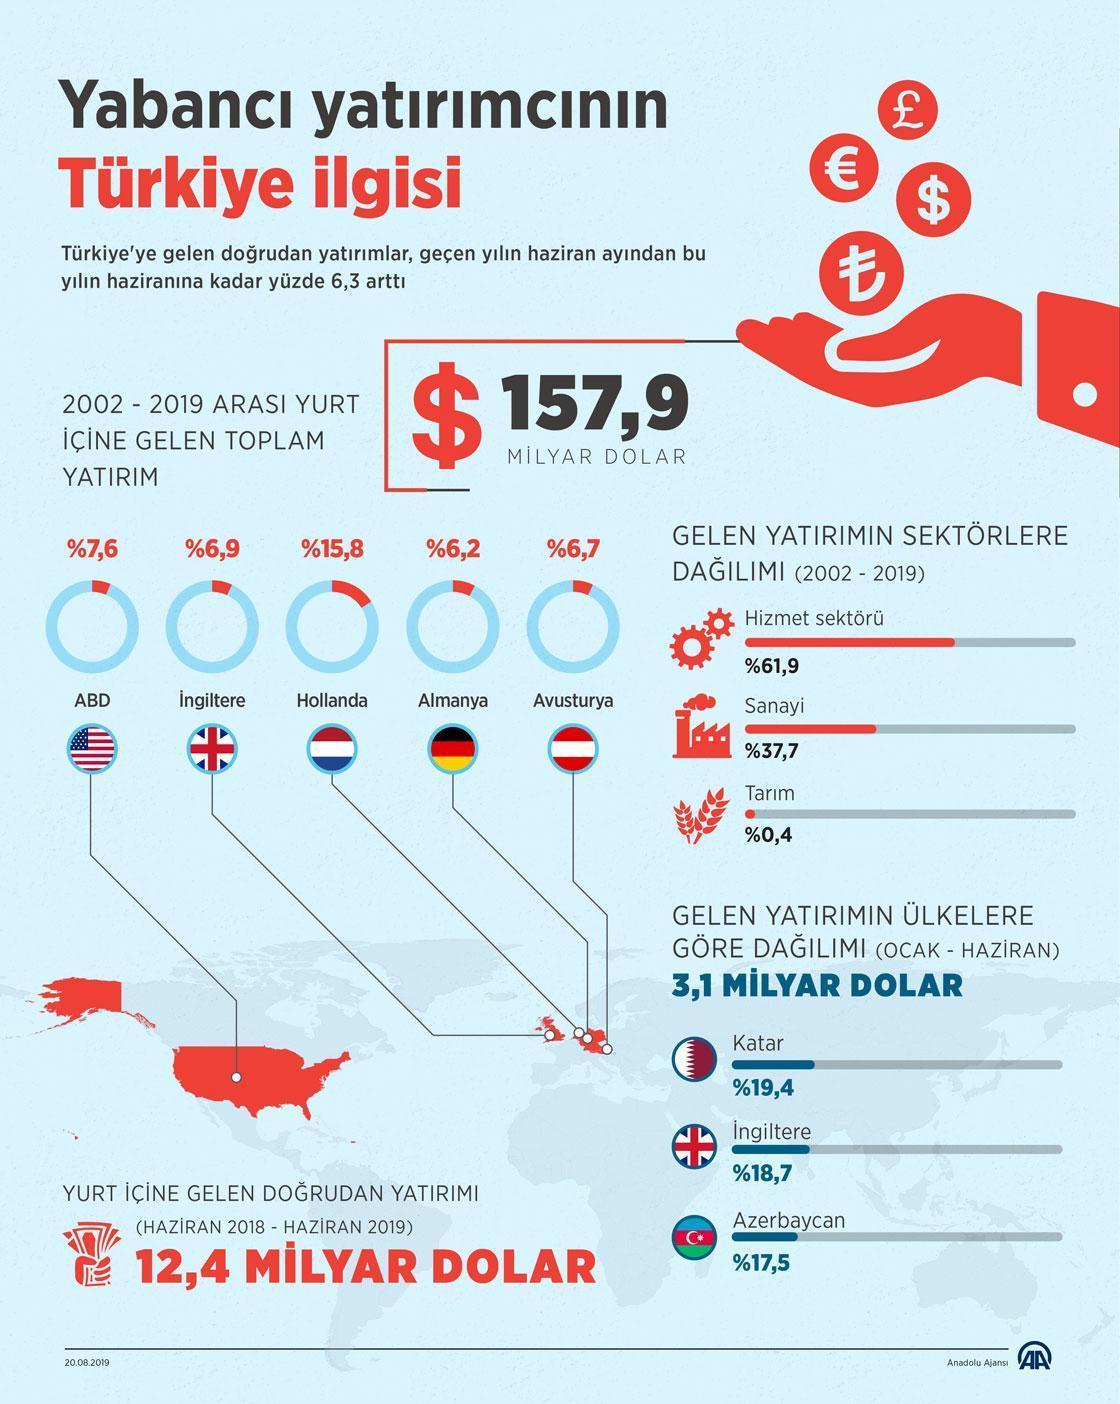 Yabancı yatırımcının Türkiye ilgisi artıyor